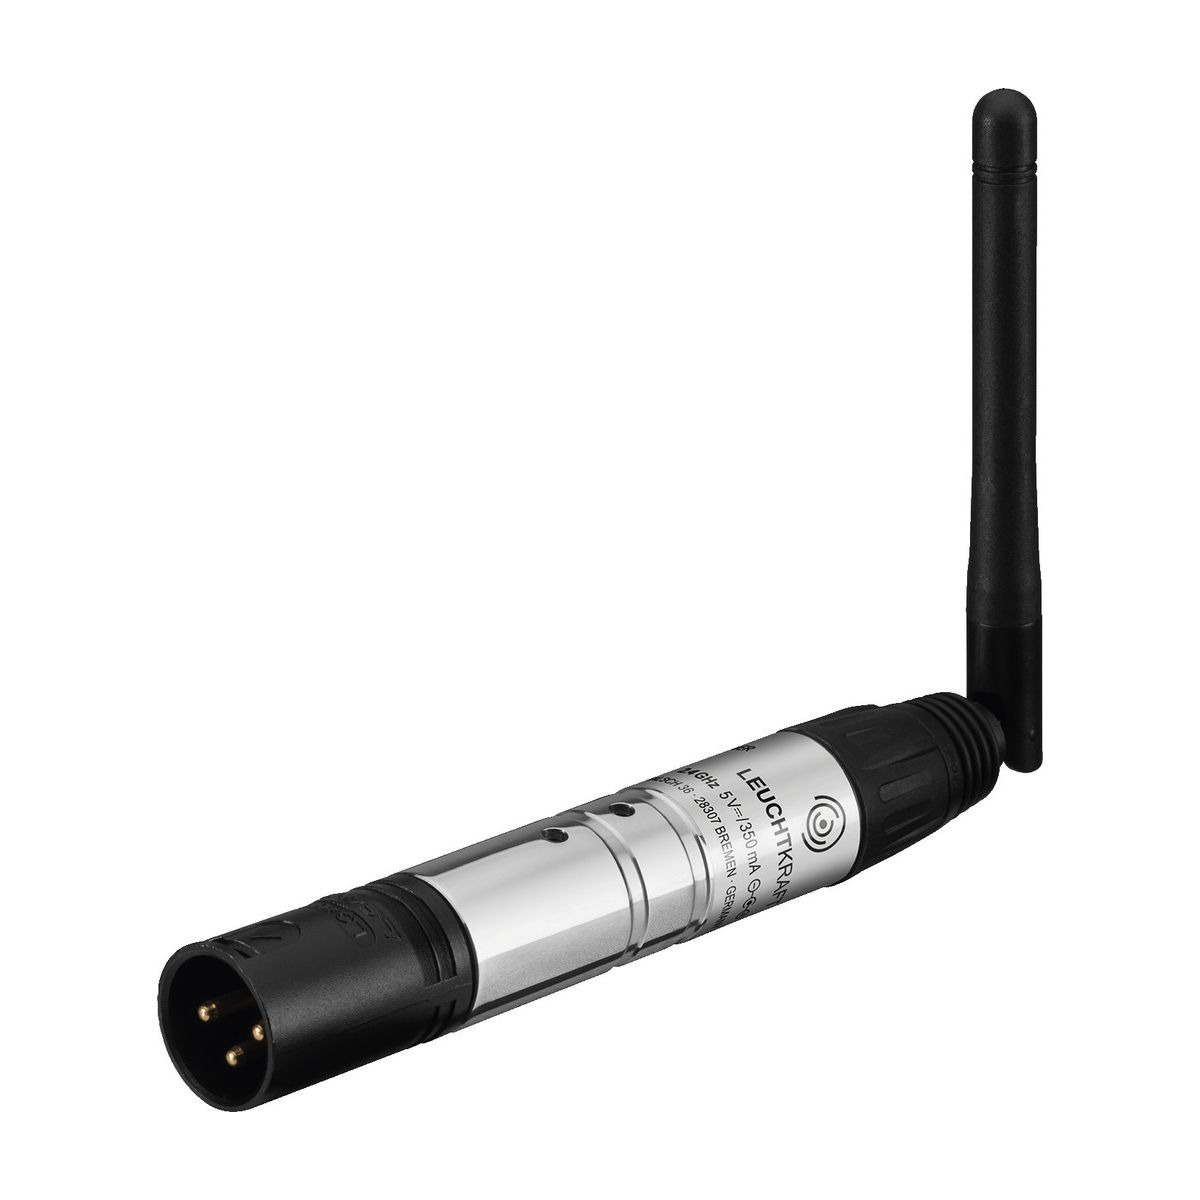 WDMX-3M | Wireless DMX transceiver (transmitter/receiver), 2.4 GHz-0